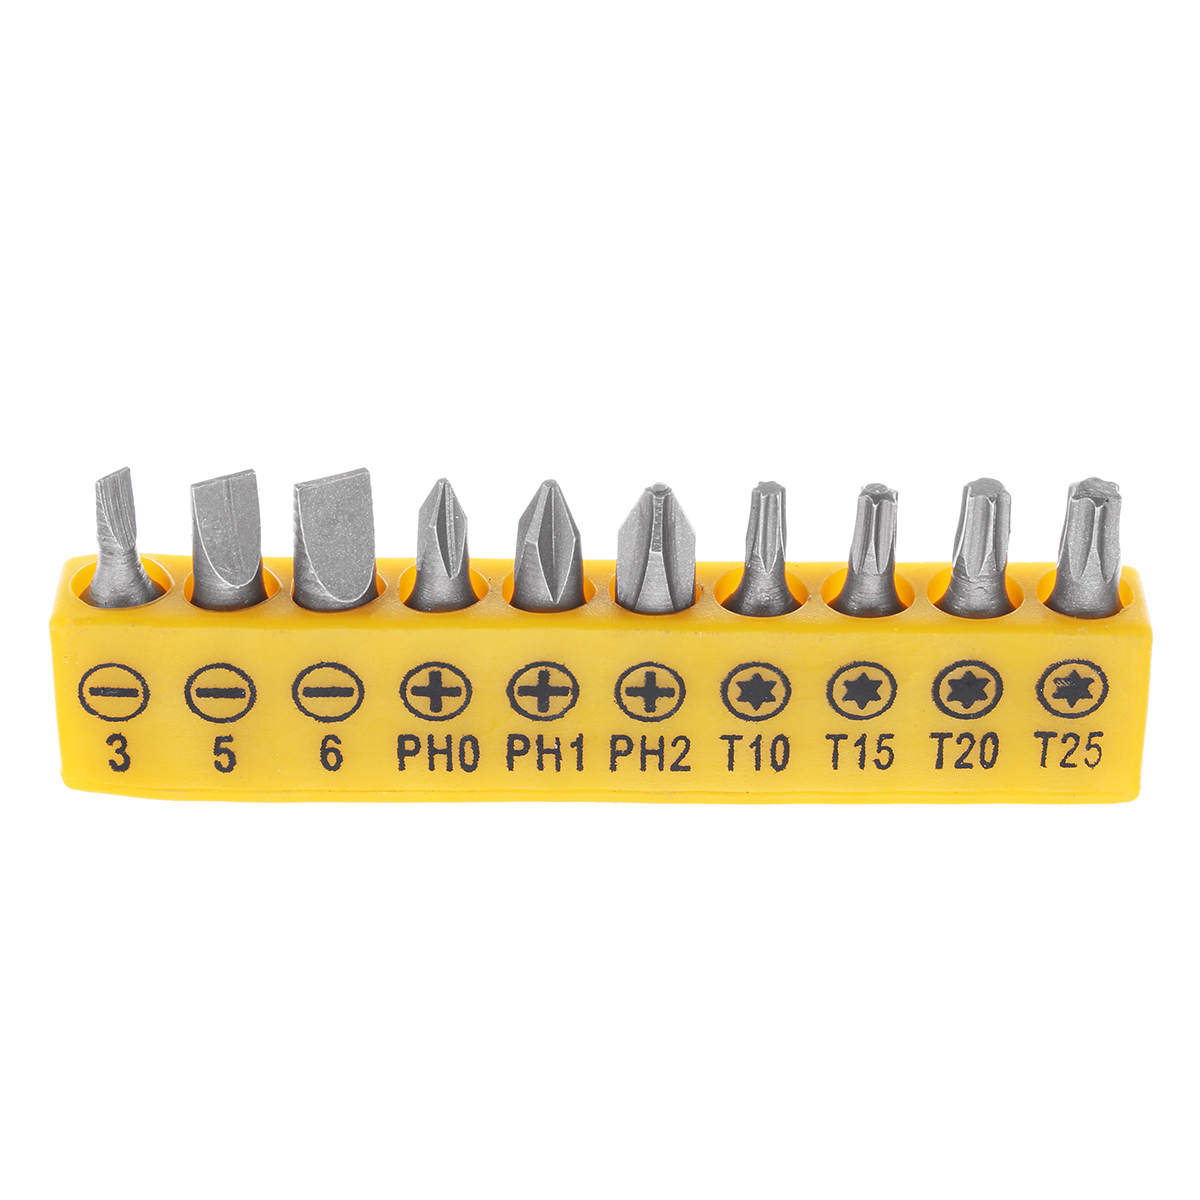 13Pcs-DIY-Household-Hand-Tool-Kit-Maintenance-Repair-Kits-Tape-Measure-Screwdriver-Cutter-Tool-1272087-7